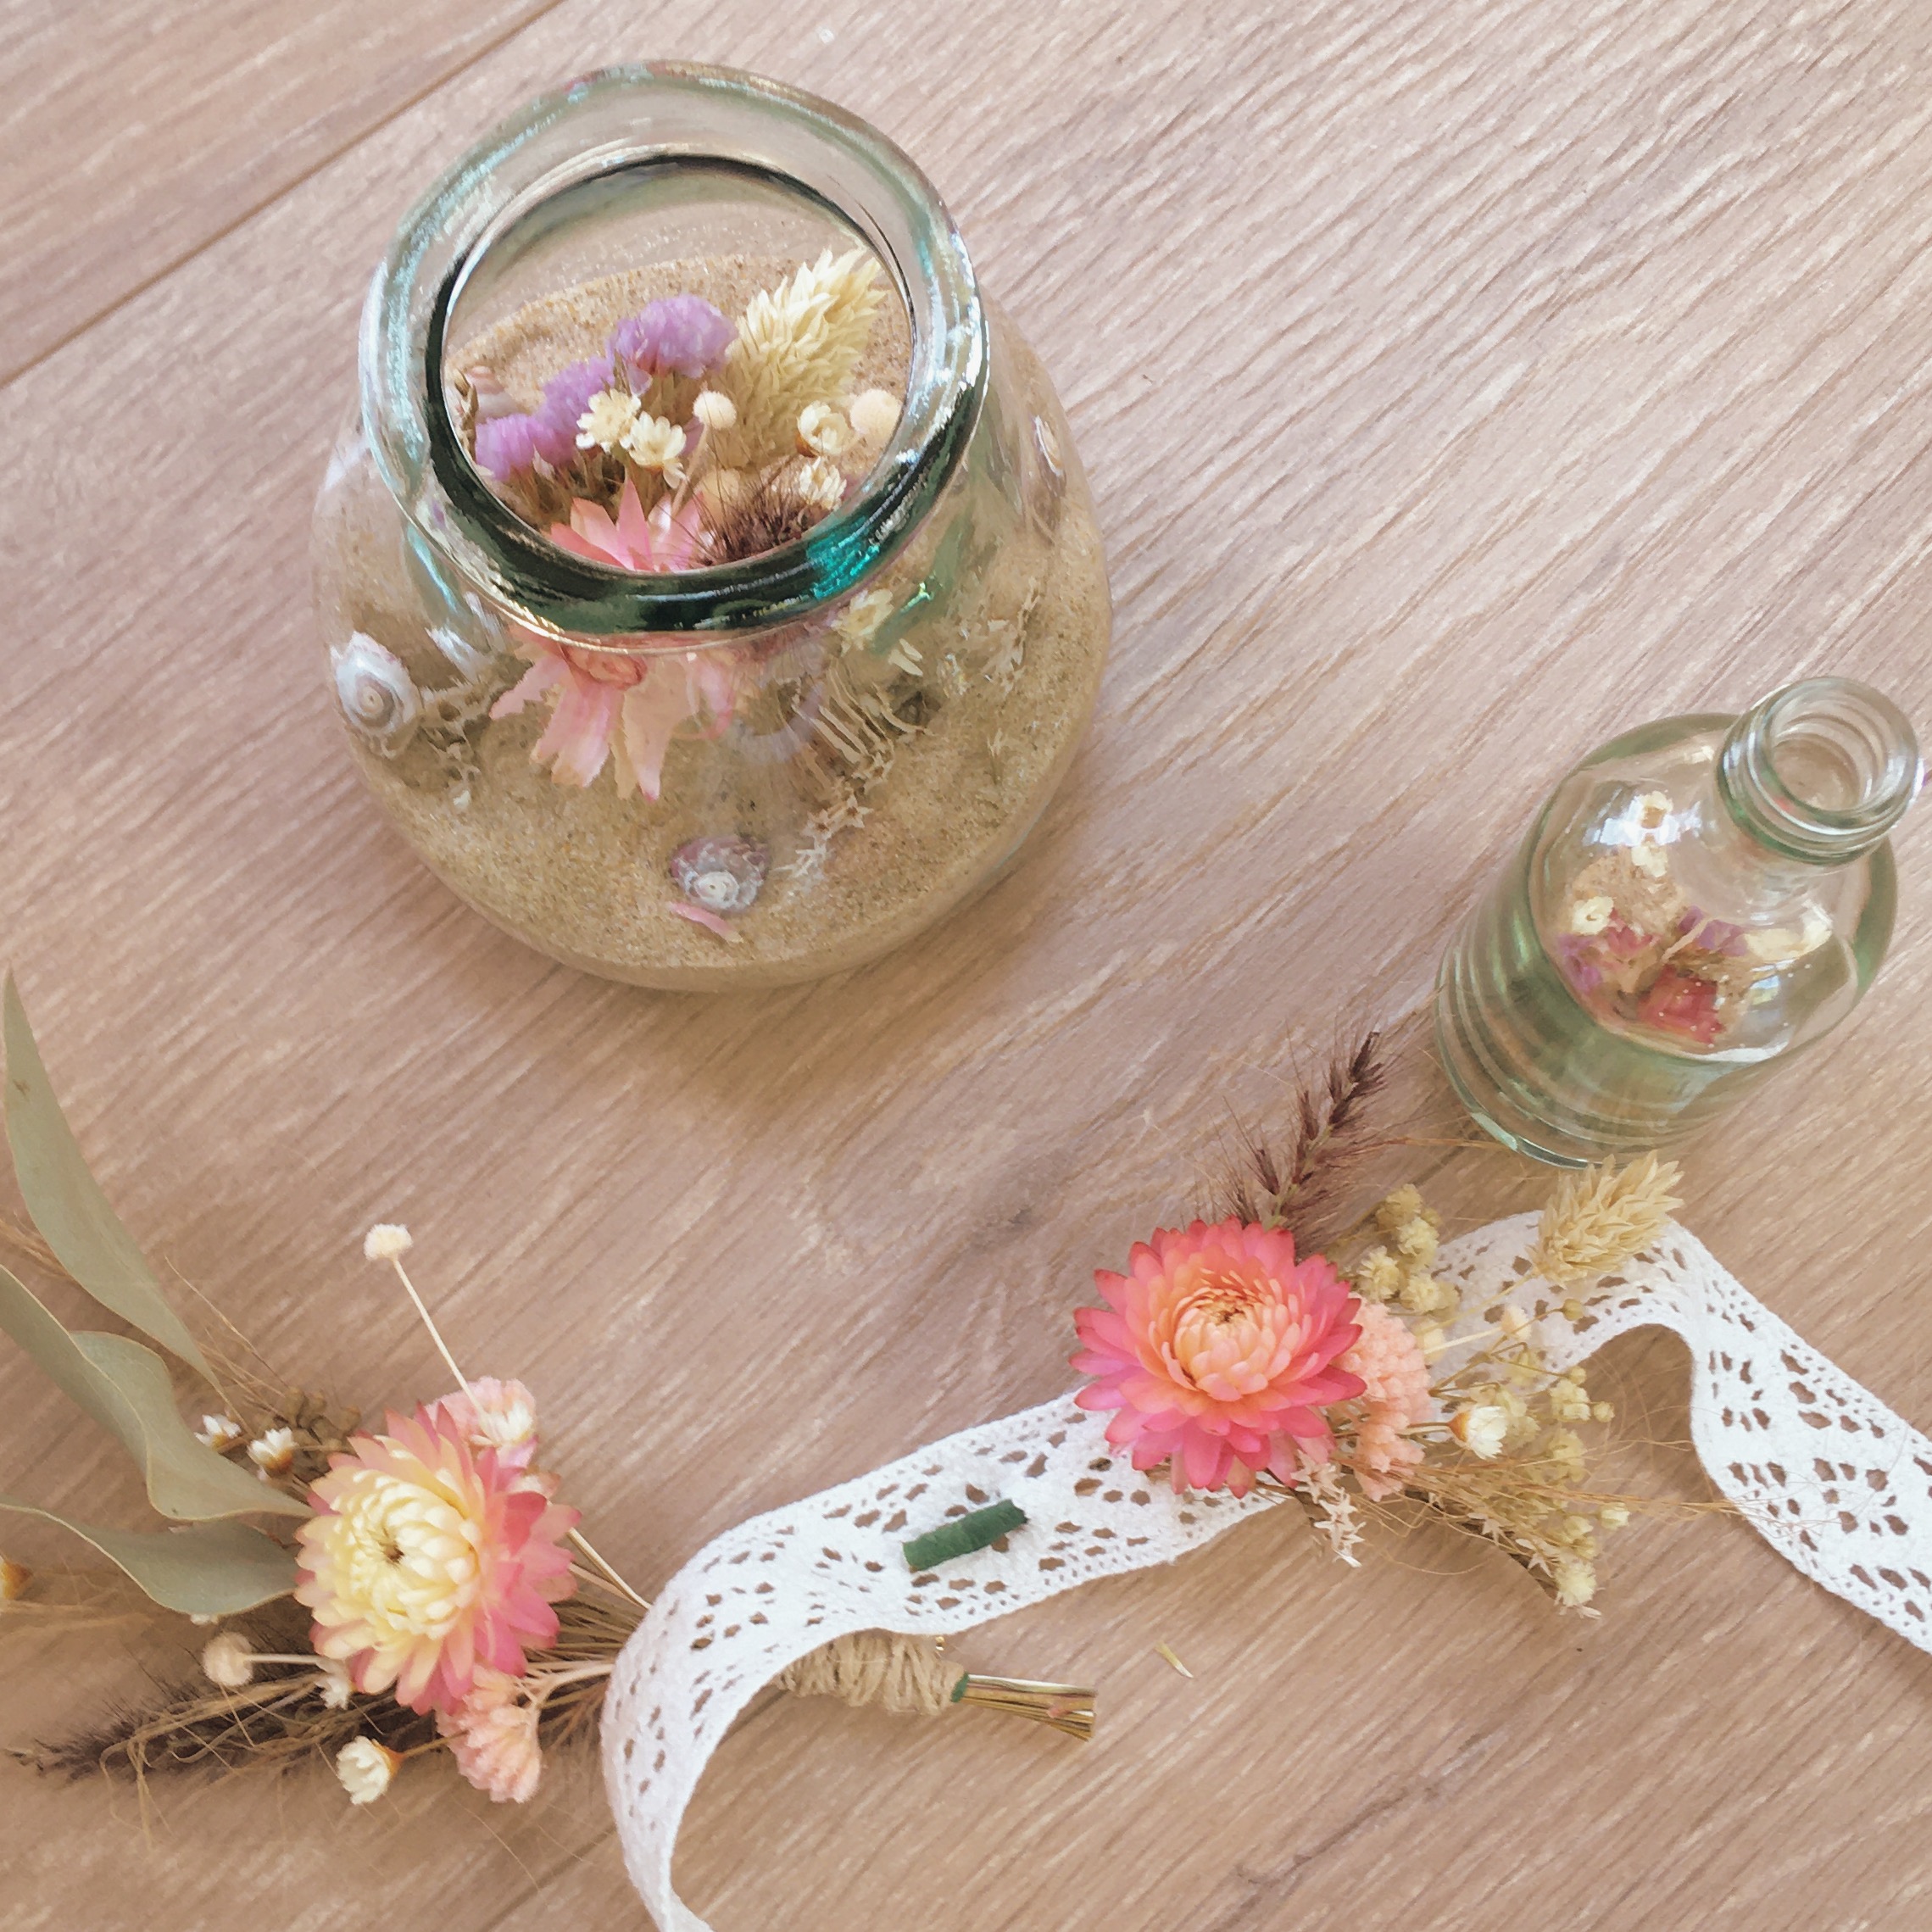 décoration et accessoires en fleurs séchées ateliers créatifs privatisés pour adultes dans le Pas de Calais sur la Cote d'Opale - du vent dans mes valises